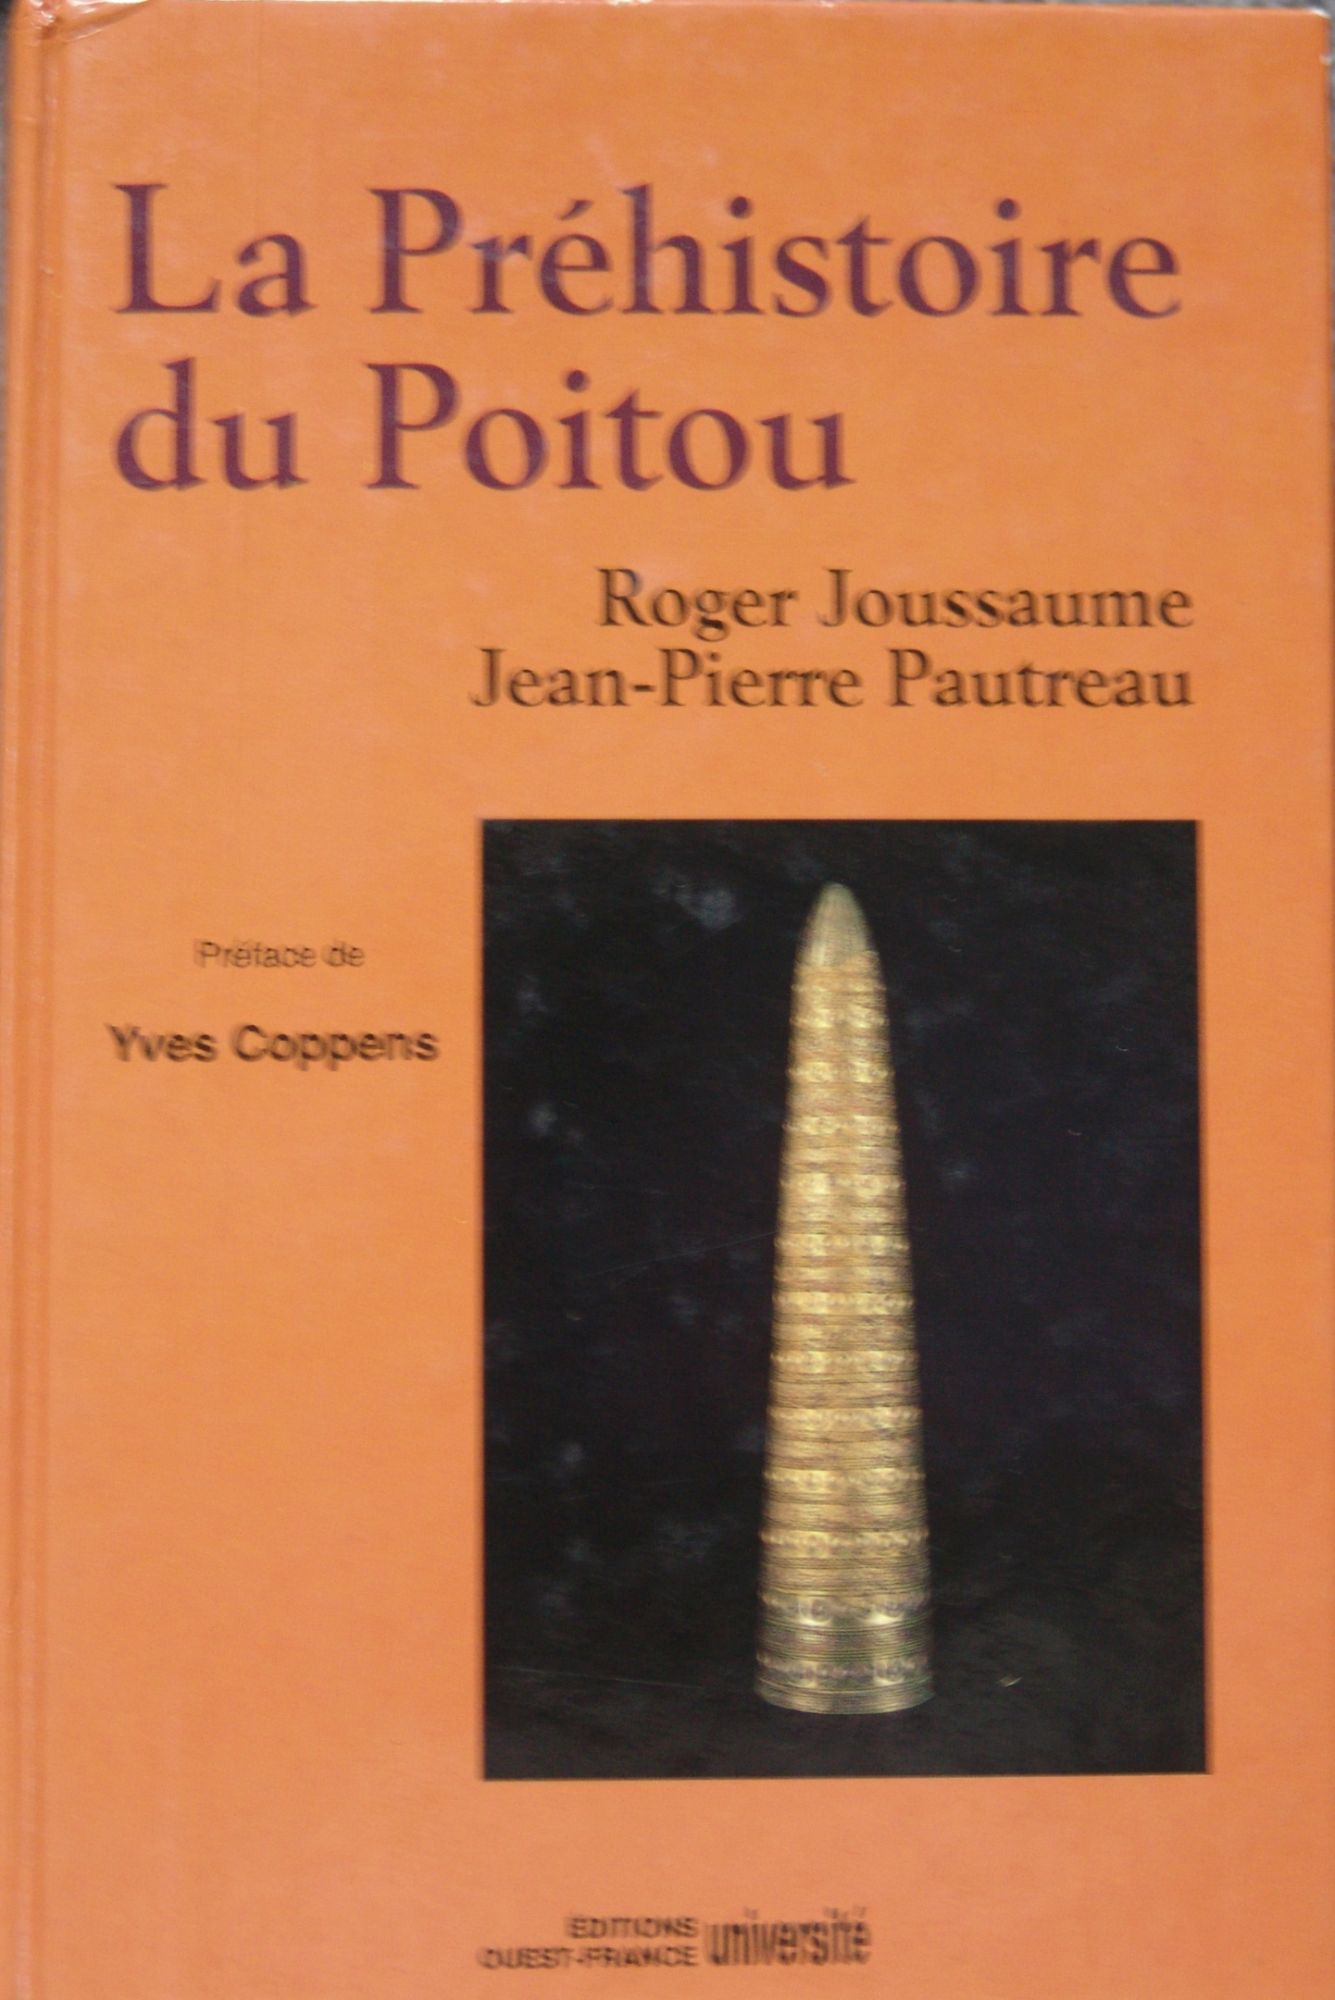 La Préhistoire du Poitou